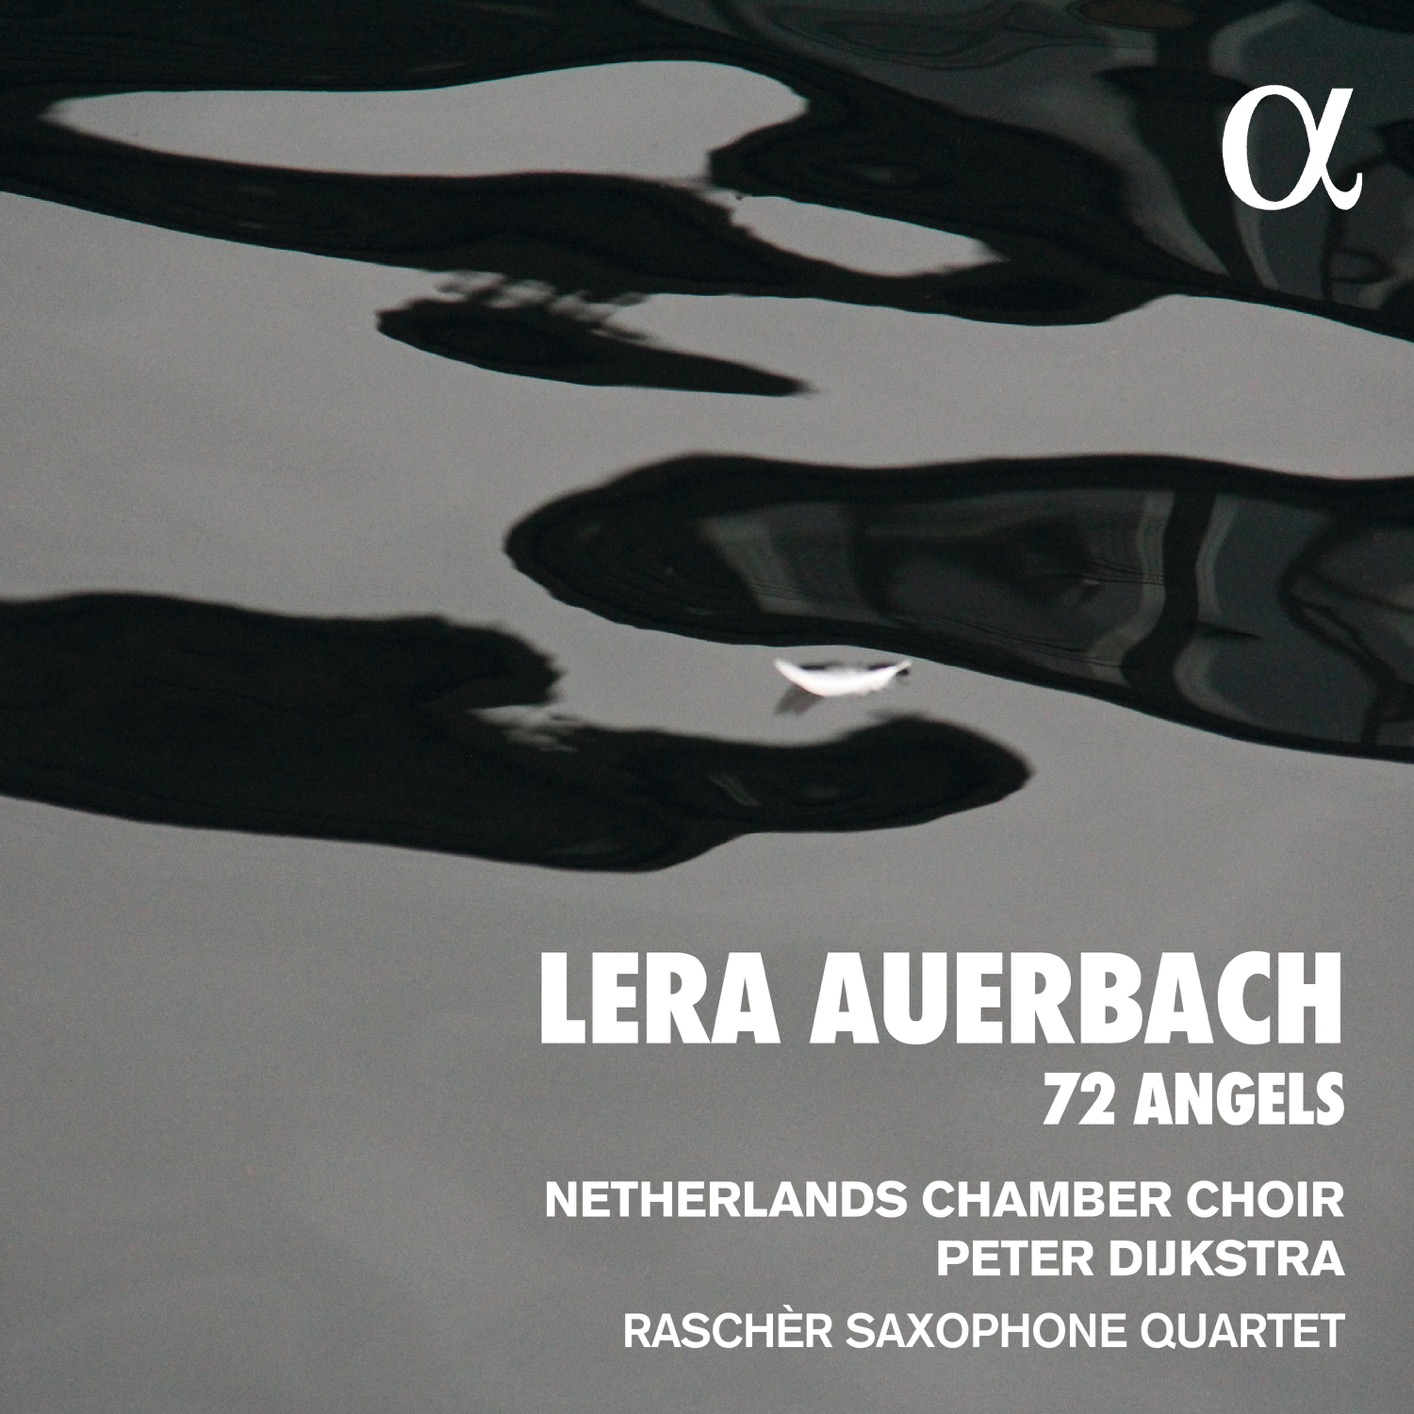 Netherlands Chamber Choir, Rascher Saxophone Quartet & Peter Dijkstra – Auerbach: 72 Angels (2020) [FLAC 24bit/48kHz]